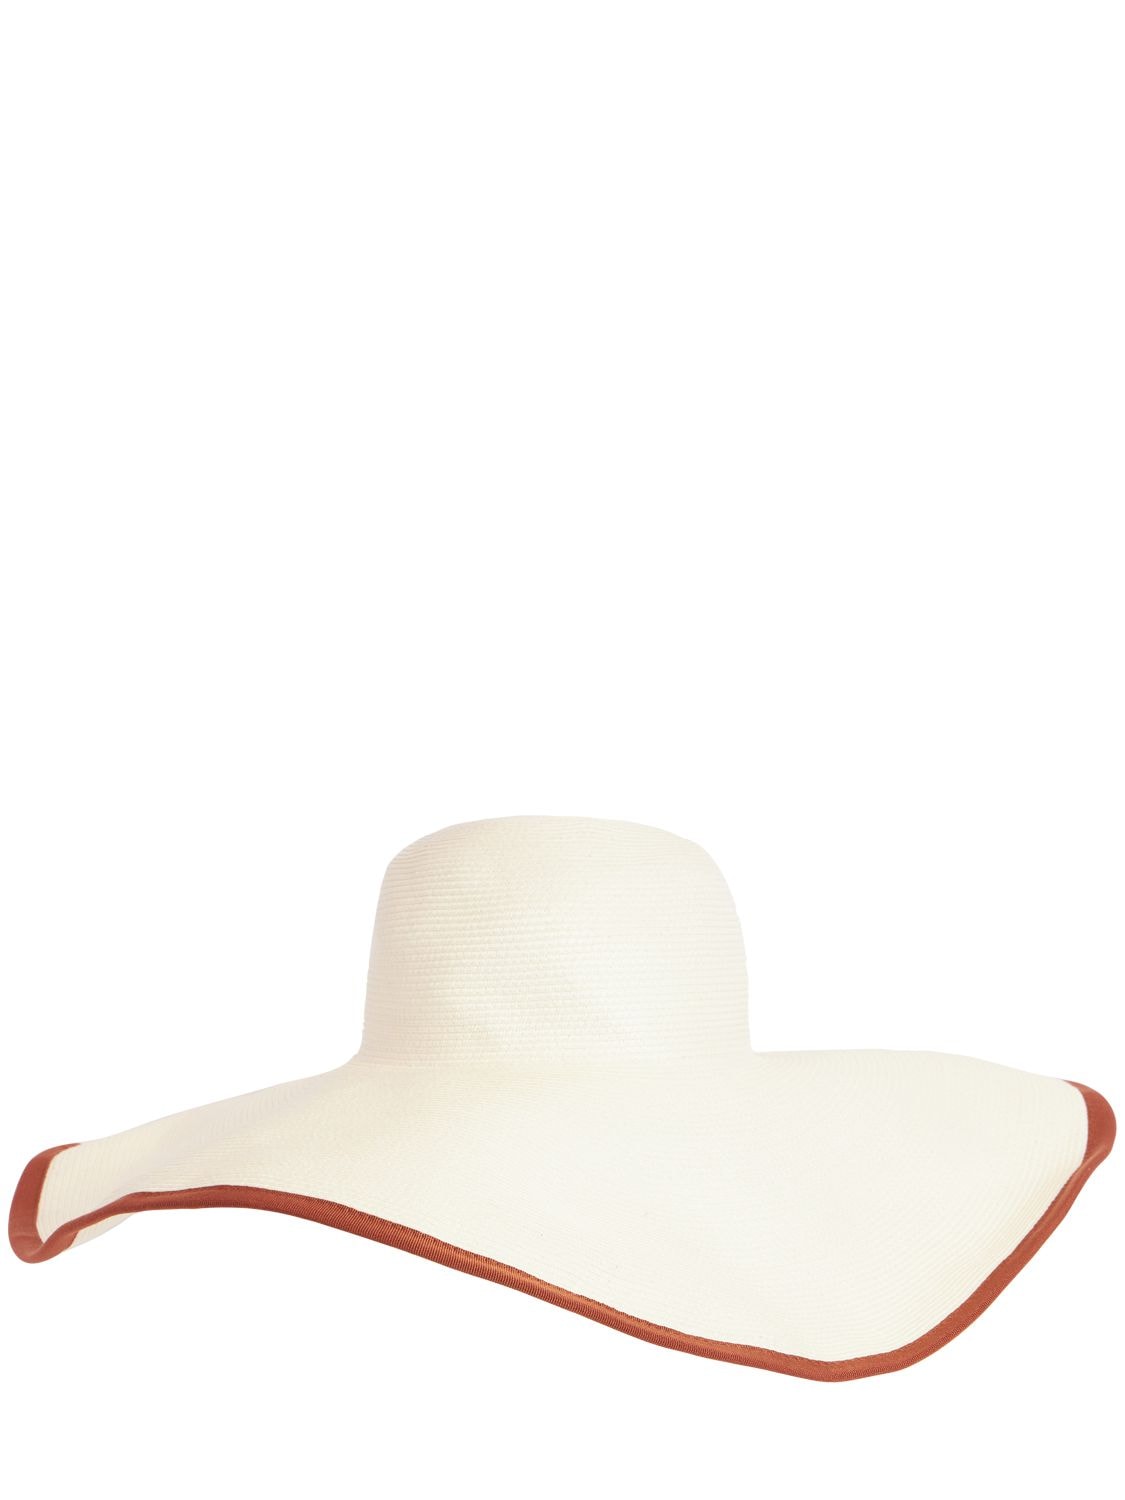 Max Mara Tullia Straw Brimmed Hat In Bianco,coccio